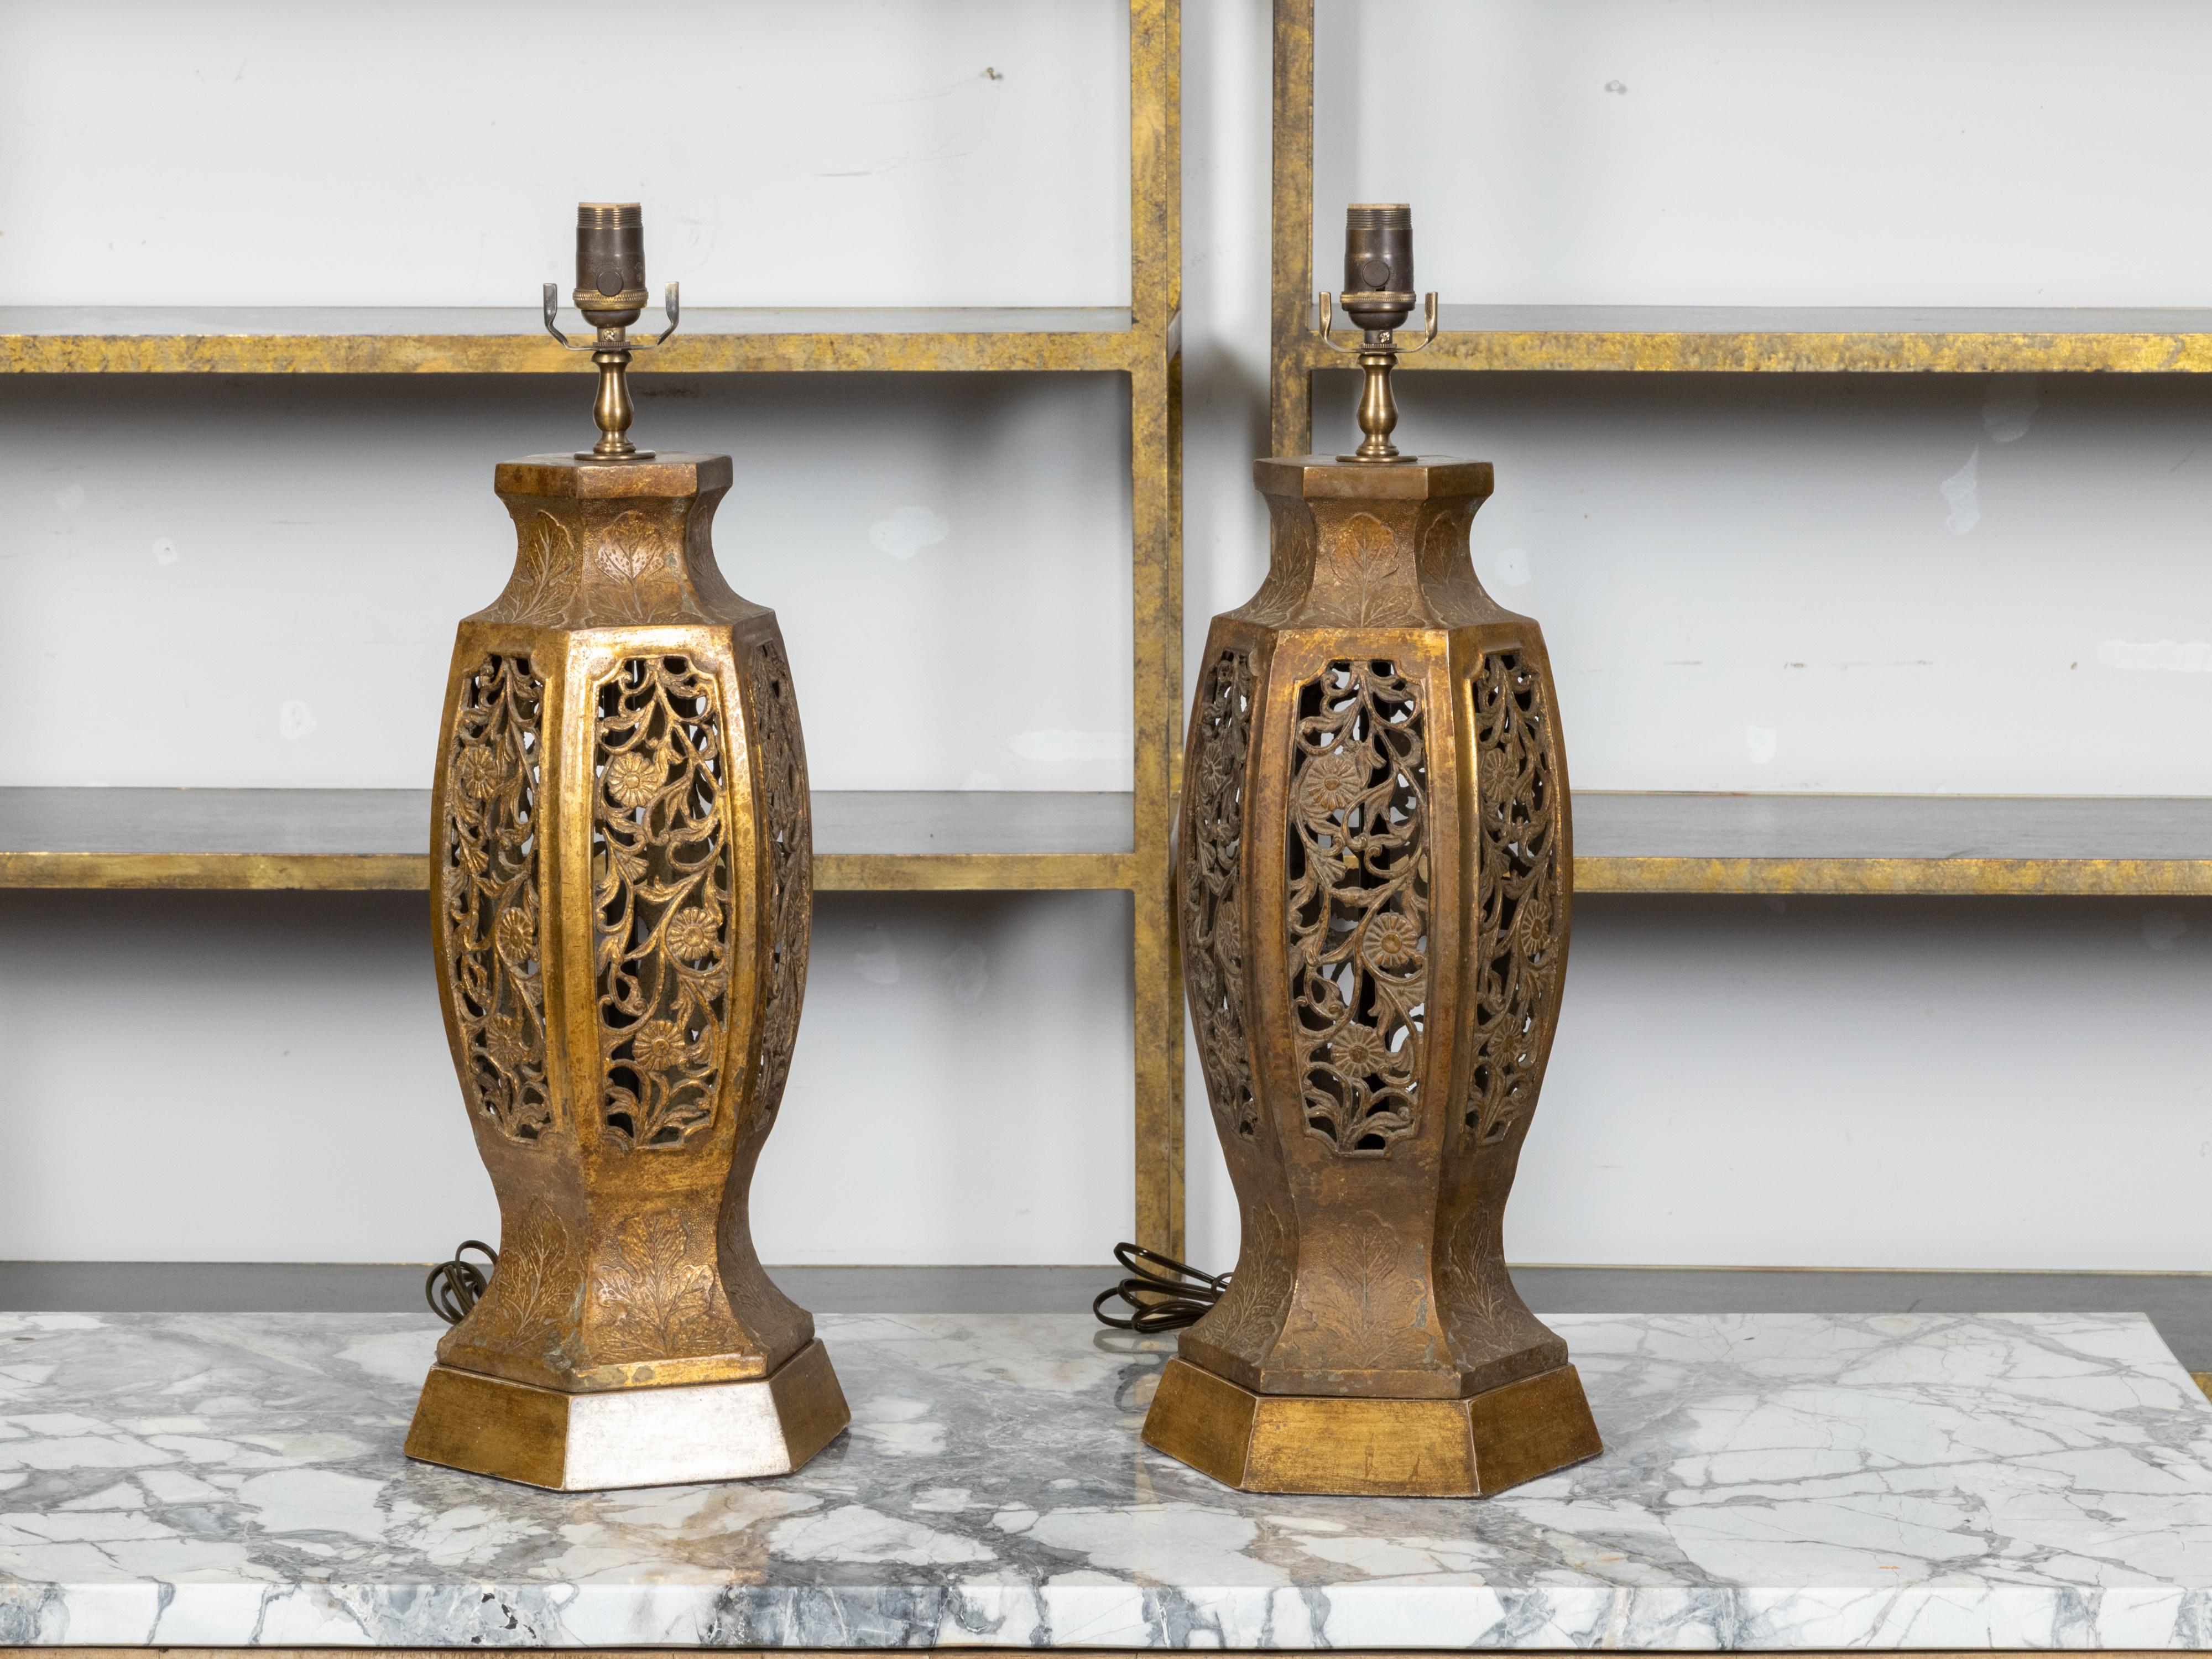 Paire de lampes de table vintage asiatiques sculptées, datant du milieu du 20e siècle, avec des motifs floraux et feuillus ajourés, reposant sur des bases hexagonales. Créée en Asie pendant la période du Midcentury, chacune de cette paire de lampes